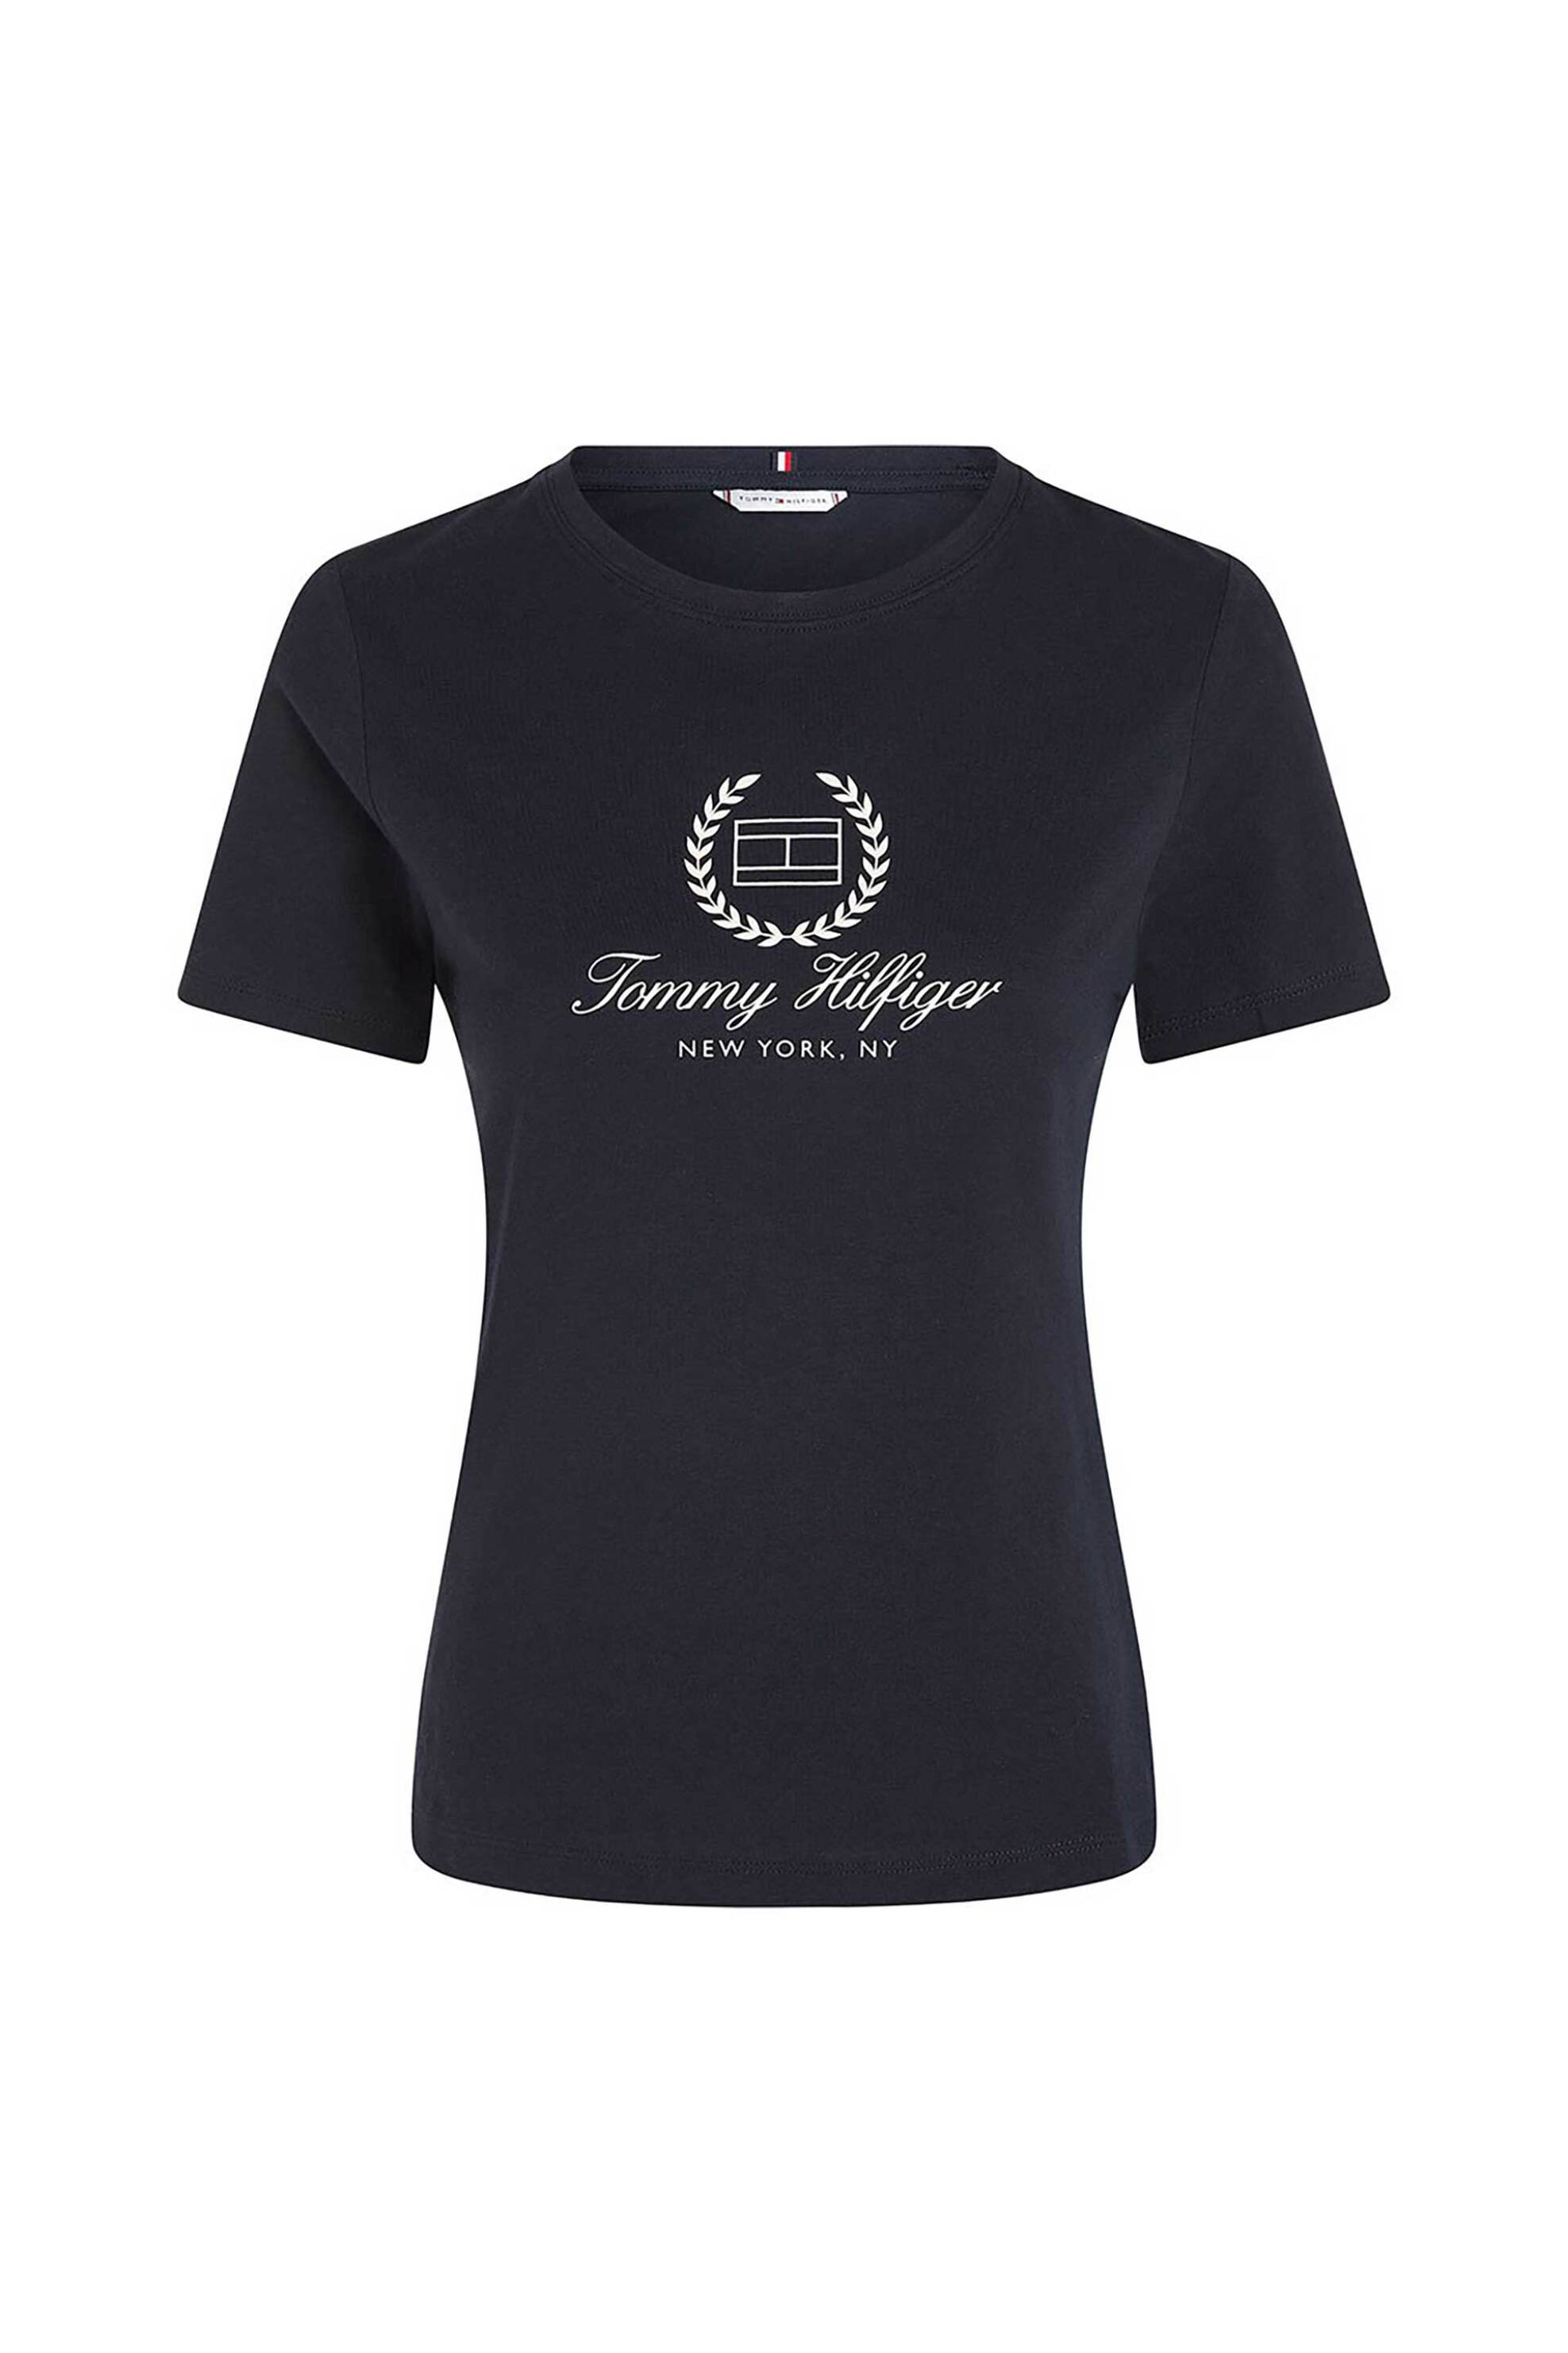 Γυναικεία Ρούχα & Αξεσουάρ > Γυναικεία Ρούχα > Γυναικεία Τοπ > Γυναικεία T-Shirts Tommy Hilfiger γυναικείο T-shirt μονόχρωμο με contrast logo print Slim fit - WW0WW41761 Σκούρο Μπλε